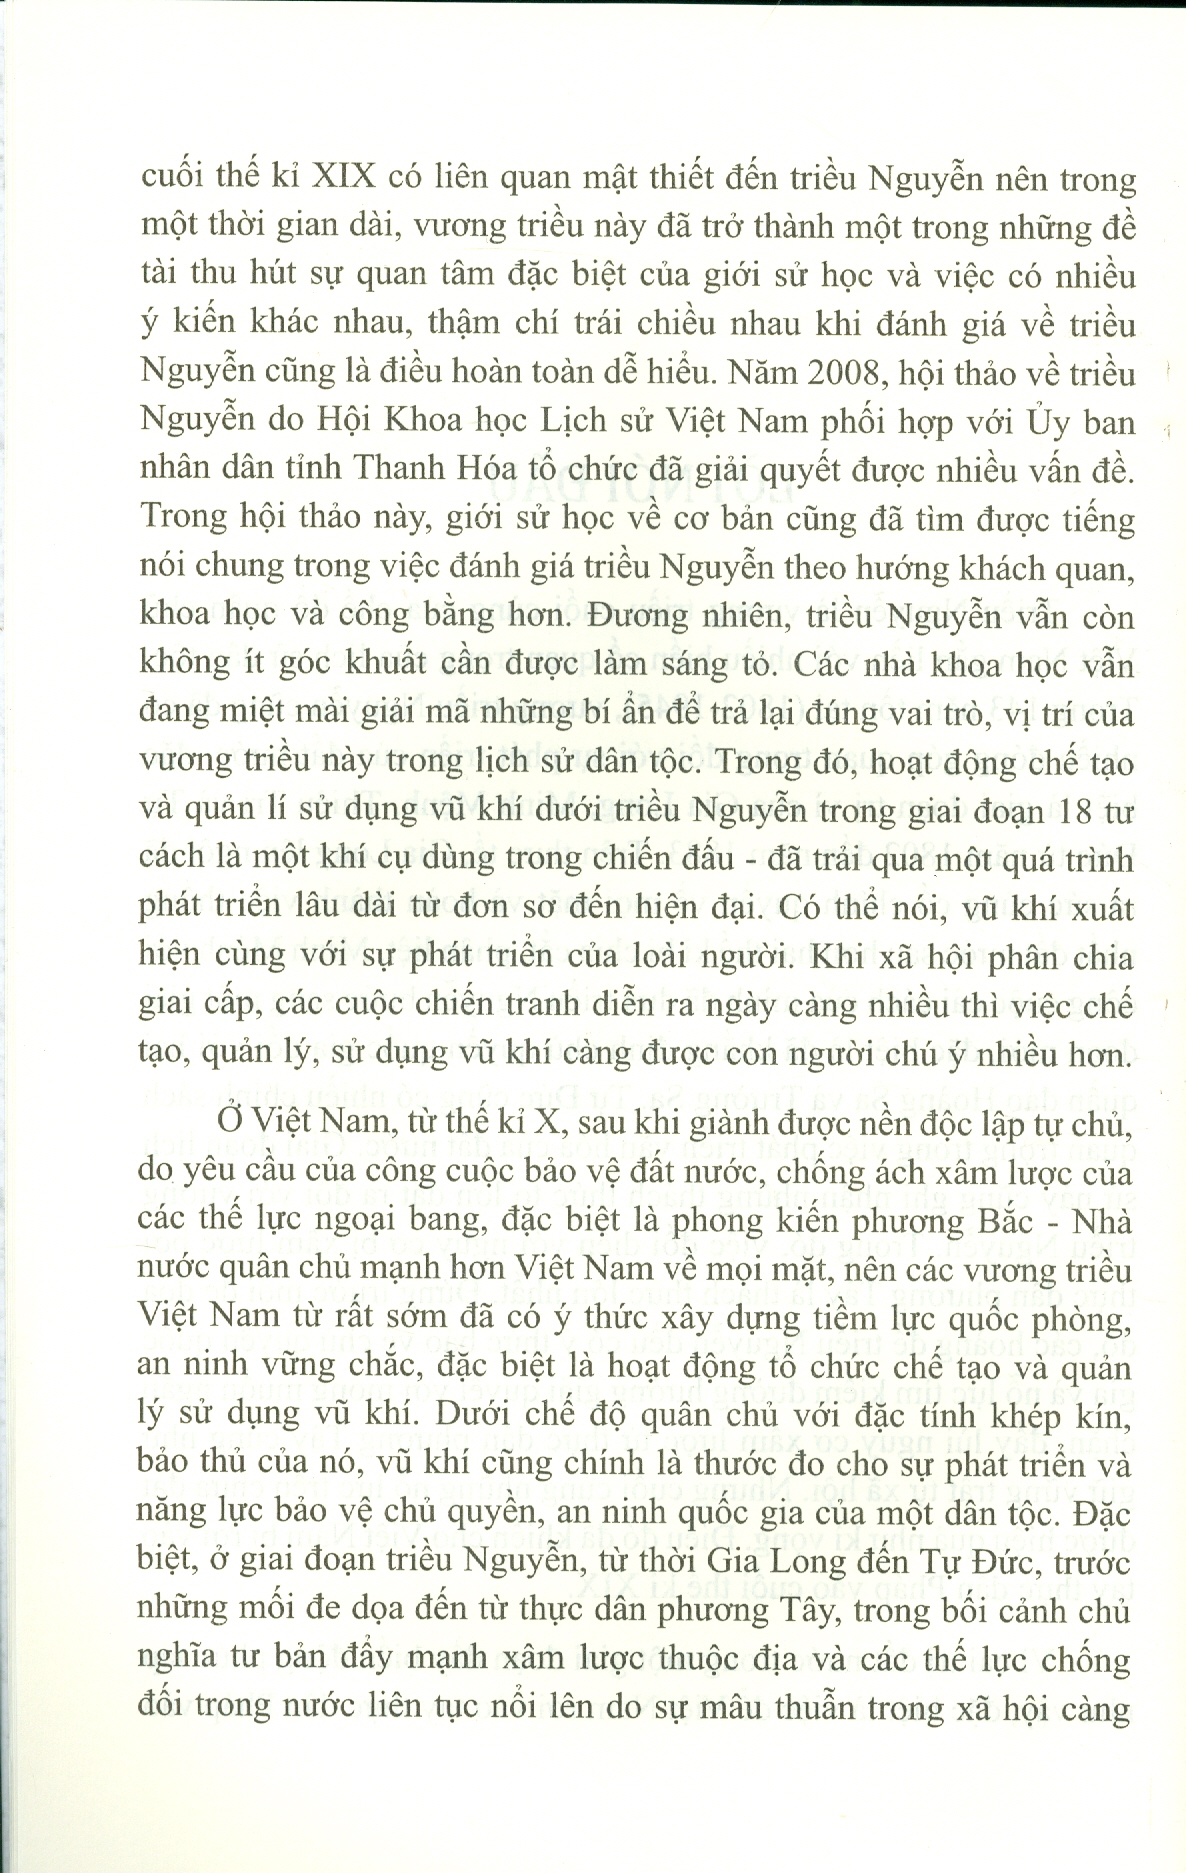 Hoạt Động Chế Tạo Và Quản Lý Sử Dụng Vu Khi Dưới Triều Nguyễn Giai Đoạn 1802-1883 (Sách chuyên khảo)